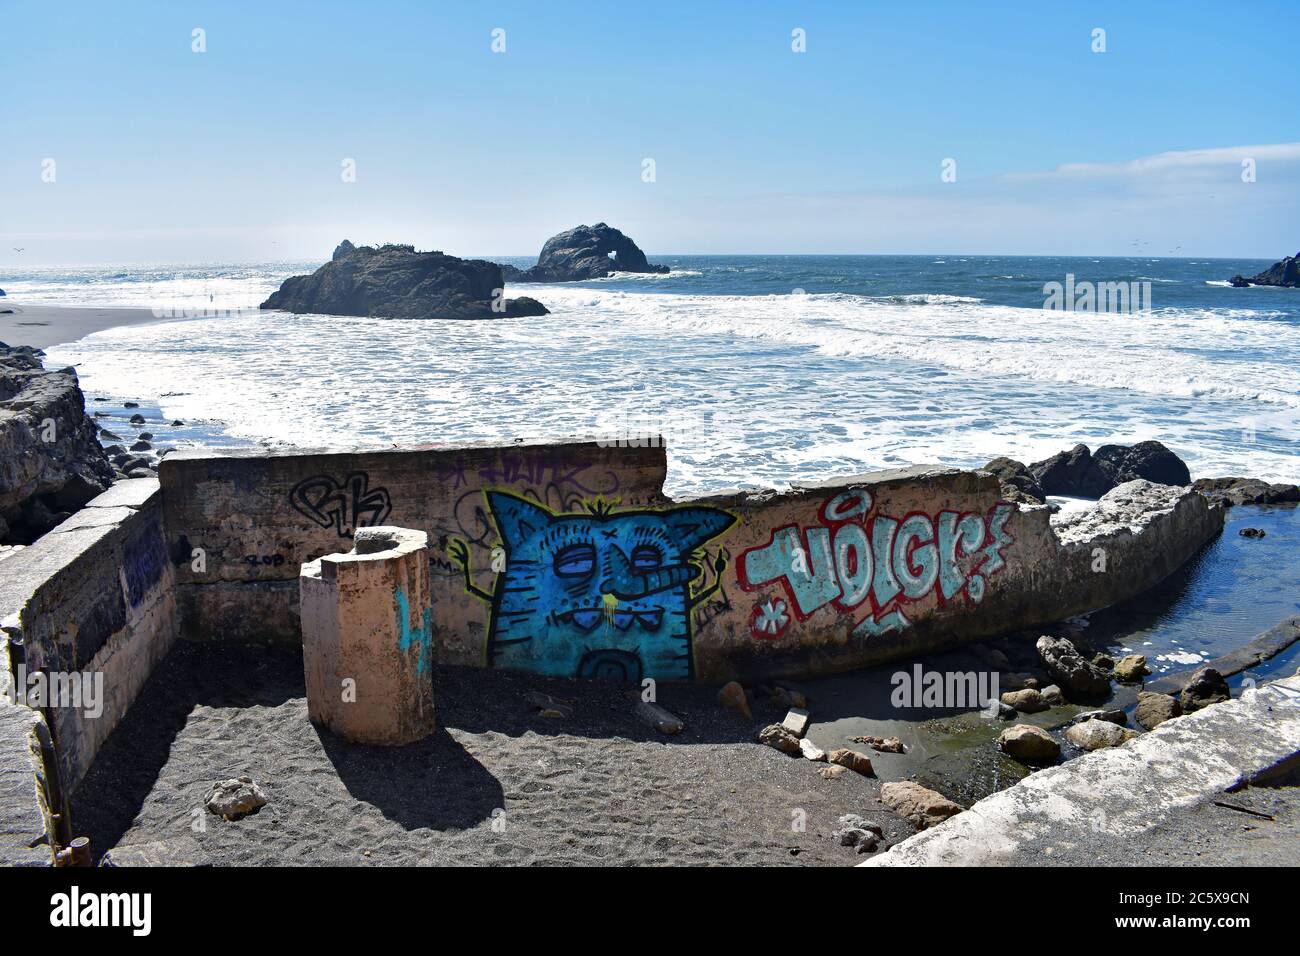 Le rovine di bagni Sutro a Lands End, San Francisco. L'Oceano Pacifico, le rocce delle foche e il cielo blu. Graffiti blu di un gatto come una creatura con un naso lungo. Foto Stock